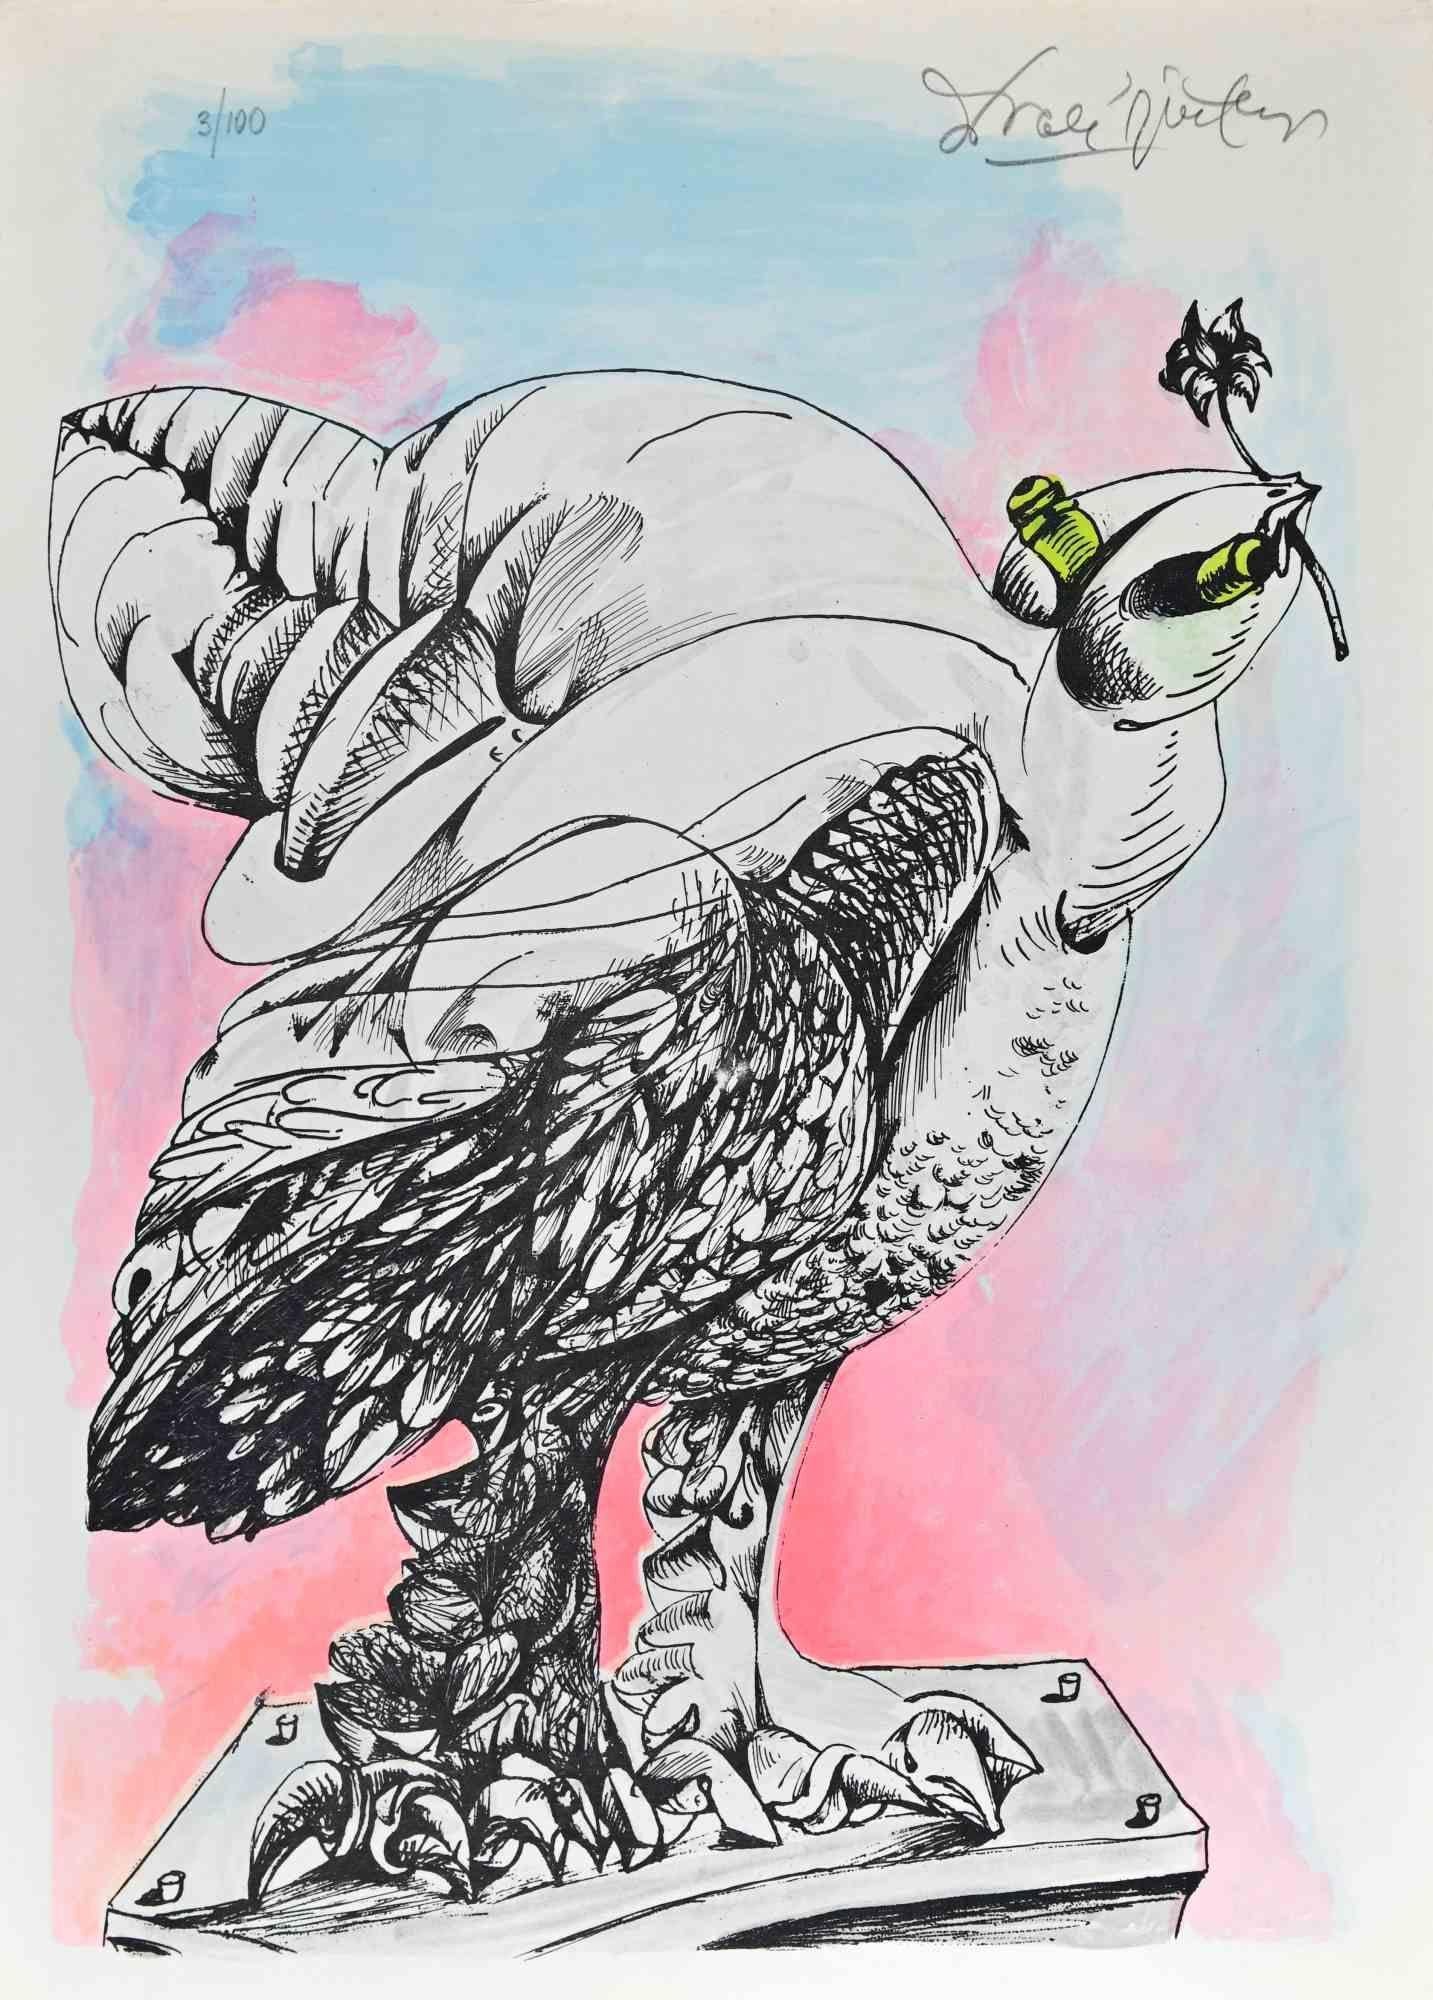 Der Friedensvogel ist ein Originalkunstwerk von Ercole Pignatelli aus dem Jahr 1972. Kolorierte Lithographie.

Vom Künstler oben mit Bleistift handsigniert und nummeriert. Auflage: 100 Stück. Das Kunstwerk wird von "la nuova foglio s.p.a." gedruckt,